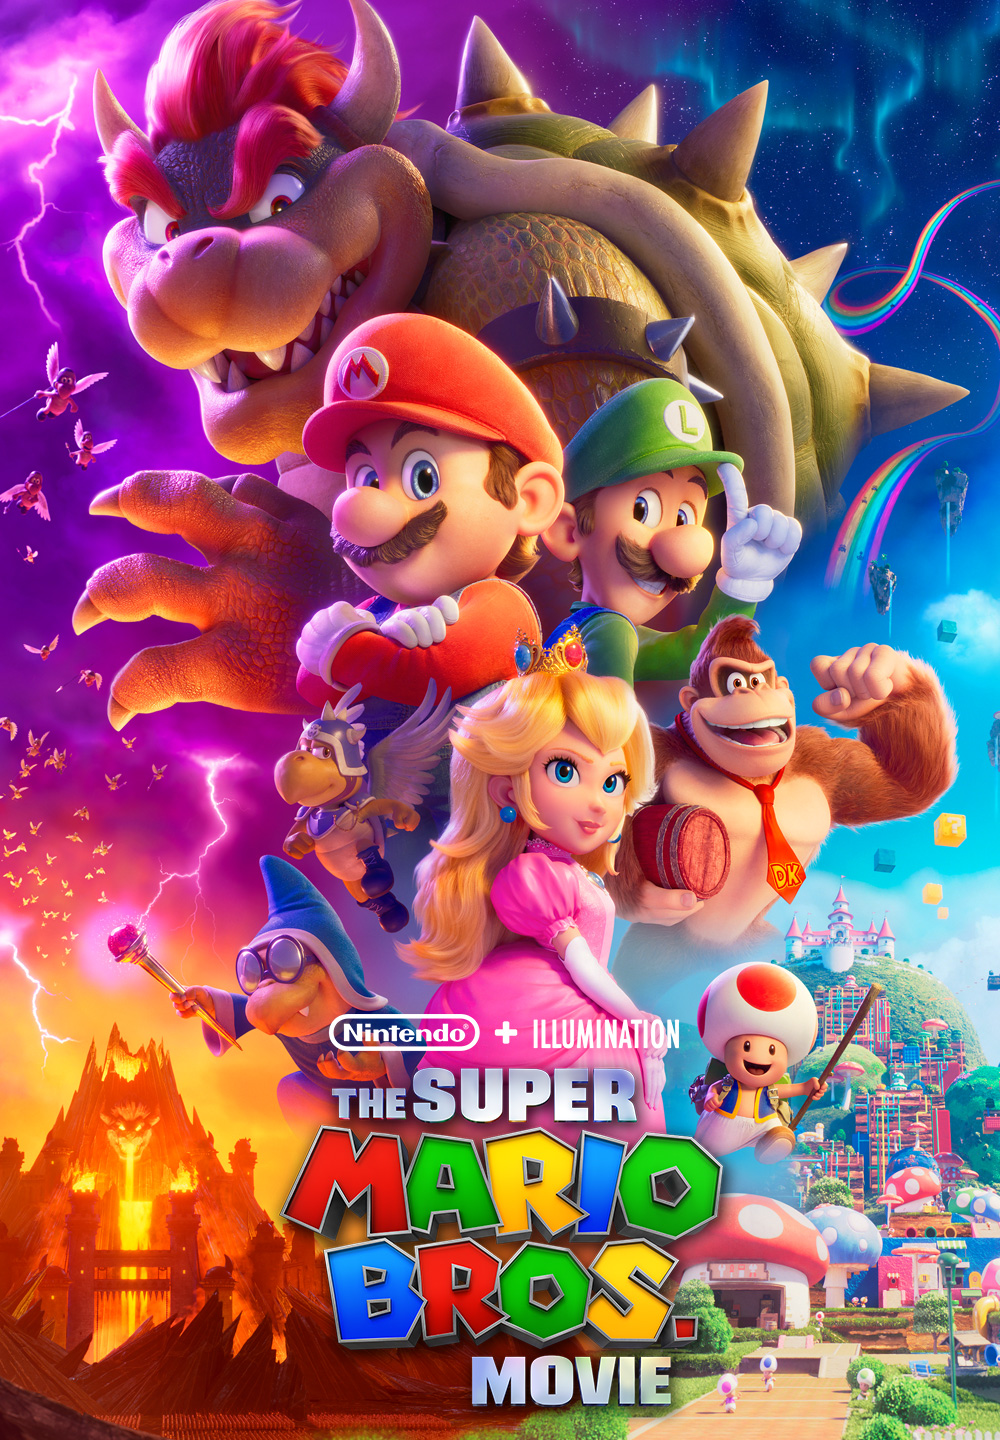 Super Mario RGP Nintendo Switch USA eShop Code - HD MOVIE CODES